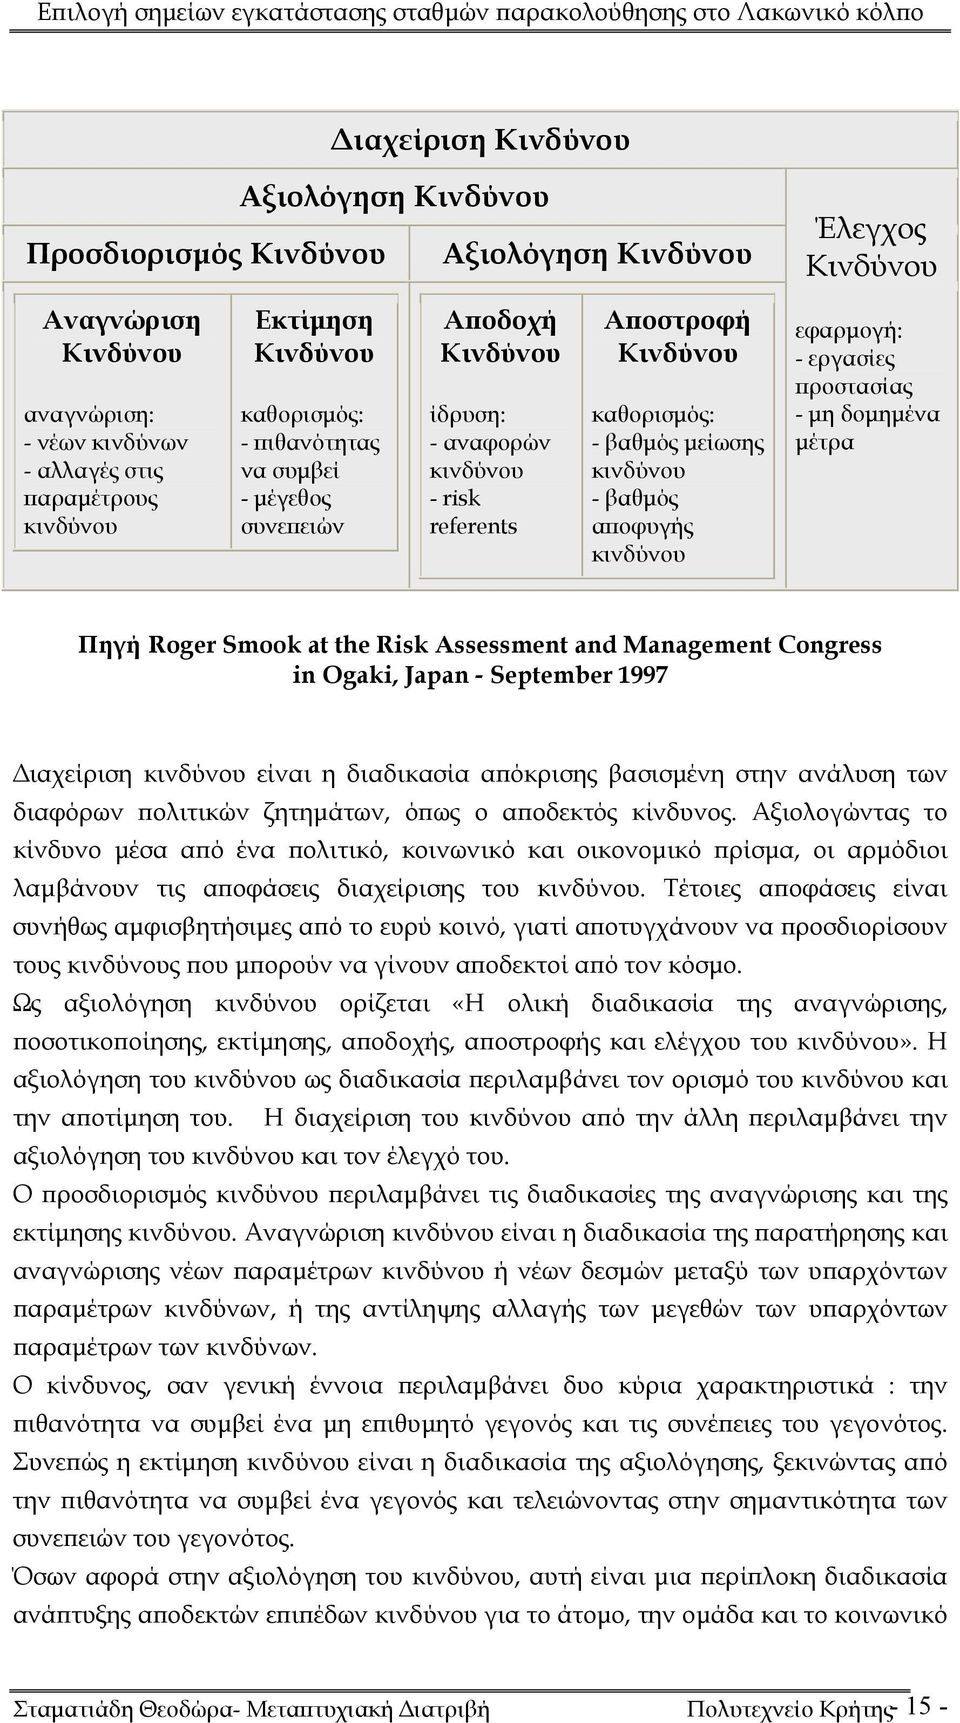 αποφυγής κινδύνου εφαρμογή: - εργασίες προστασίας - μη δομημένα μέτρα Πηγή Roger Smook at the Risk Assessment and Management Congress in Ogaki, Japan - September 1997 Διαχείριση κινδύνου είναι η